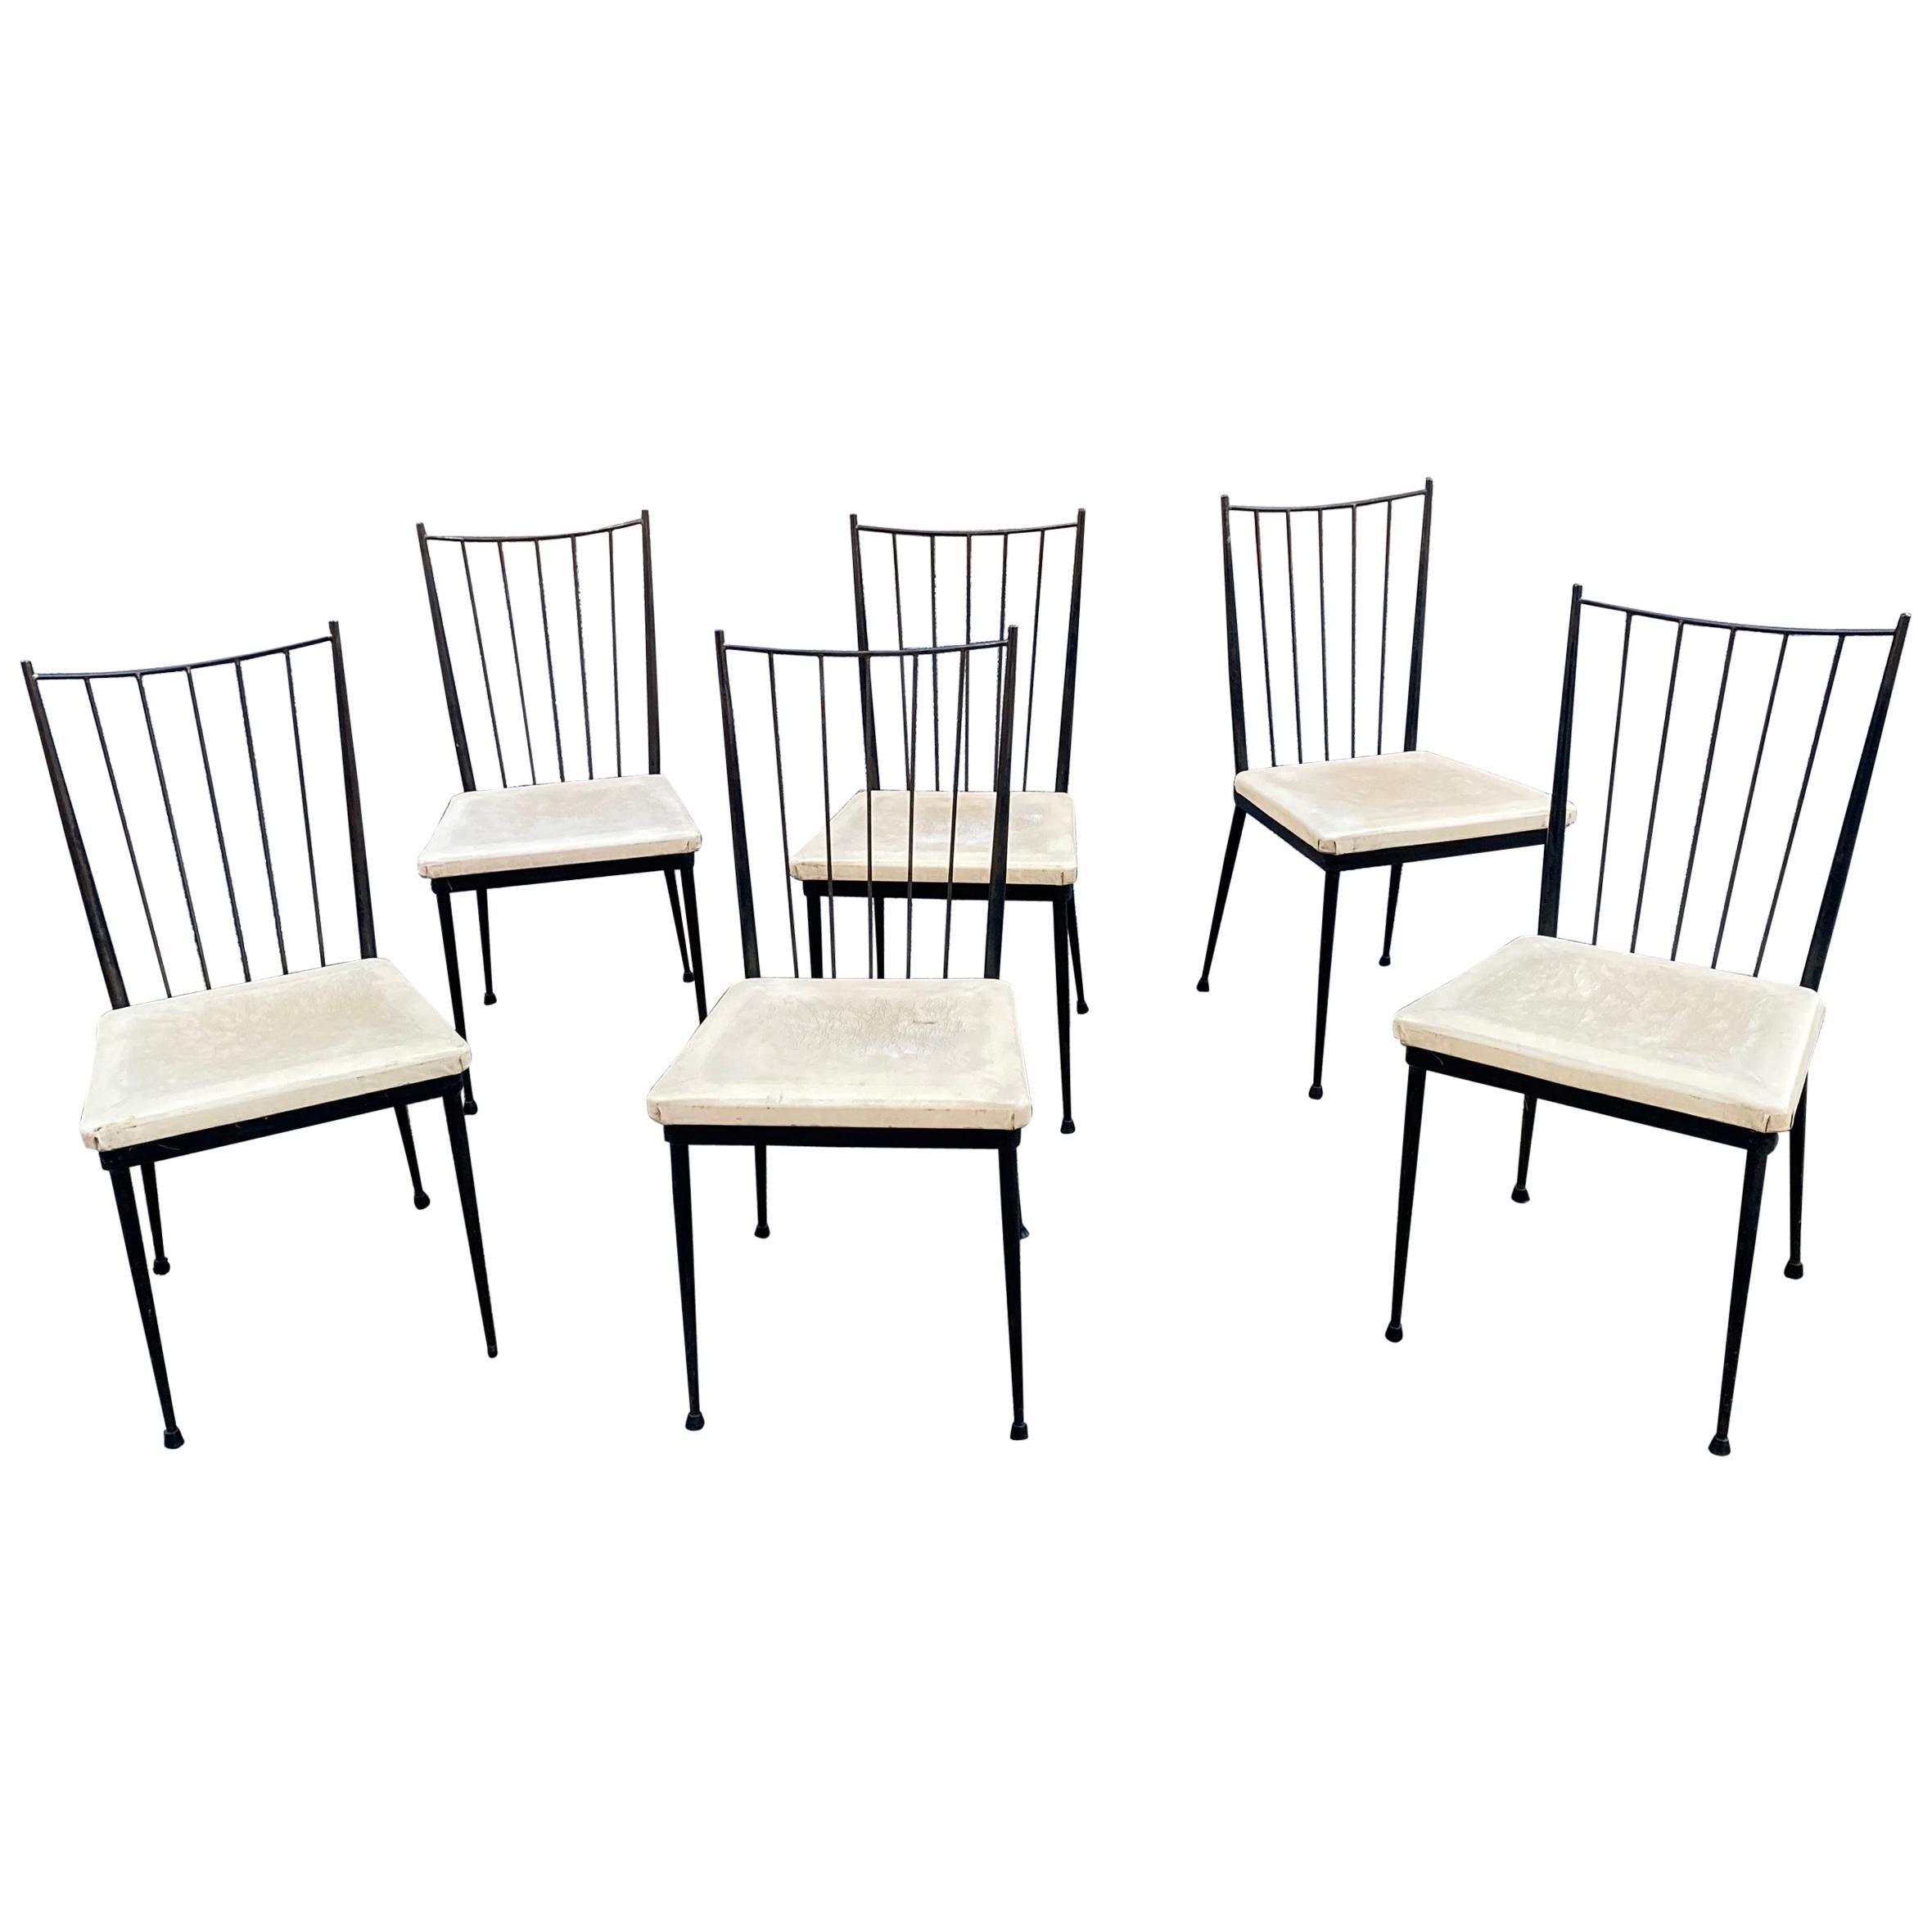 6 chaises en métal laqué, reconstruction française vers 1950/1960